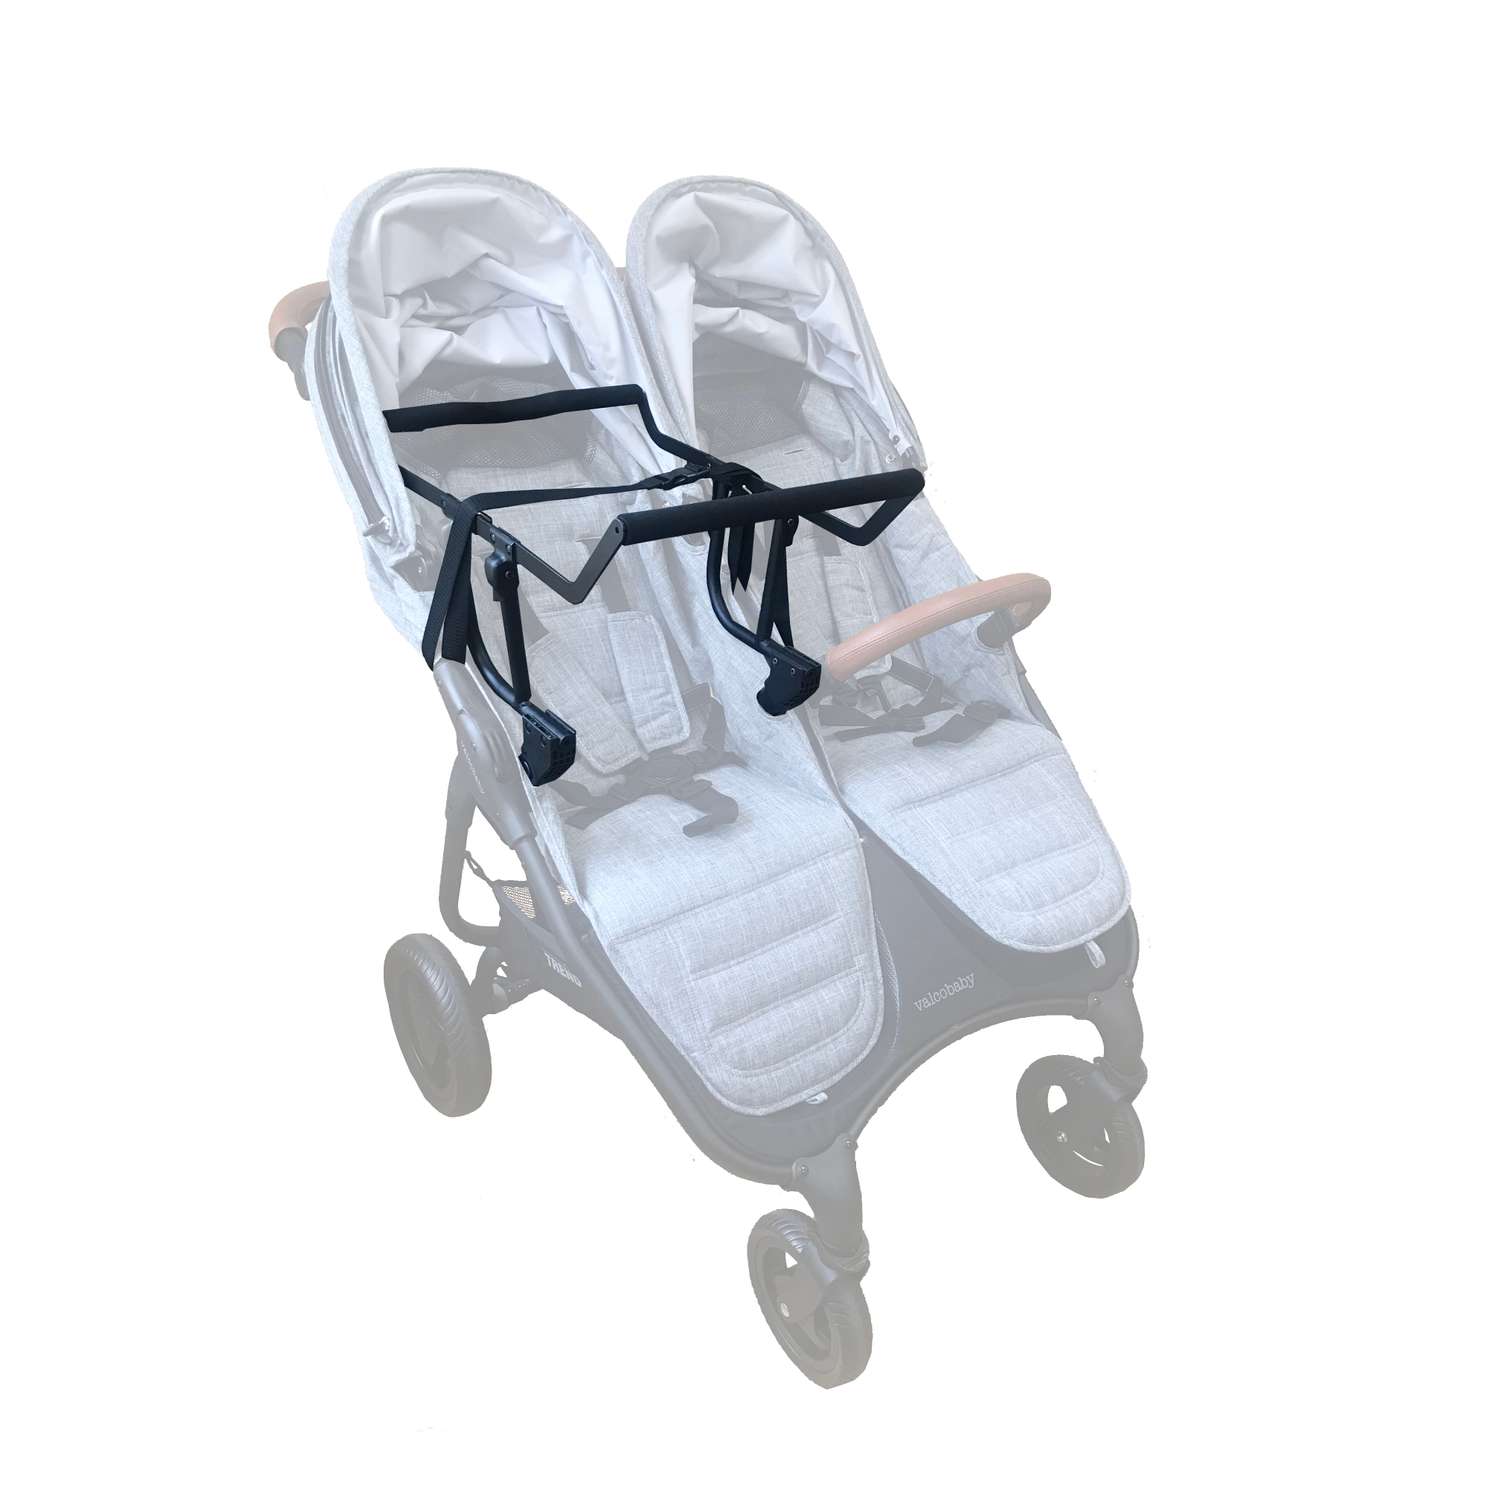 Адаптер Valco Baby для автокресла универсальный к коляске Duo Trend 9942 - фото 1